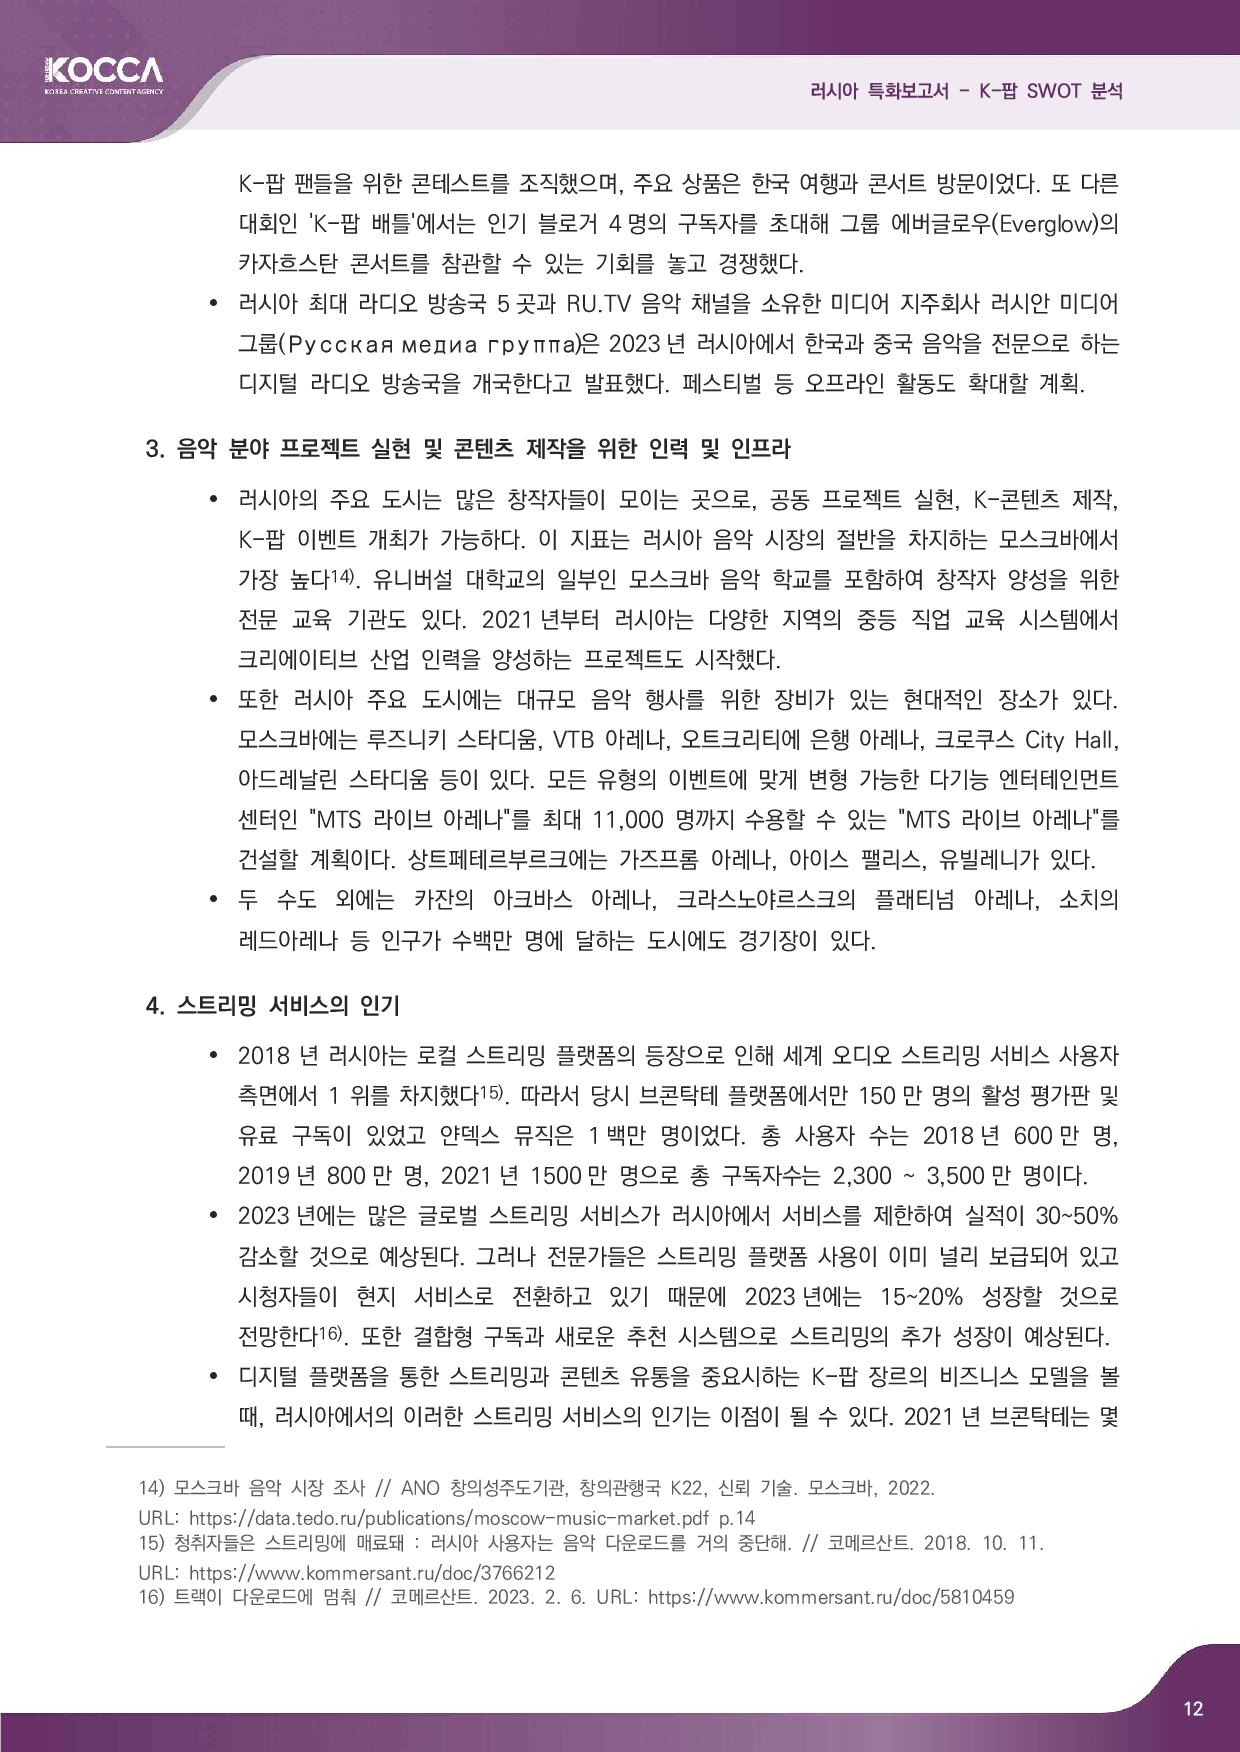 2. 러시아 특화보고서_K-pop SWOT 분석 (3)-page-014.jpg